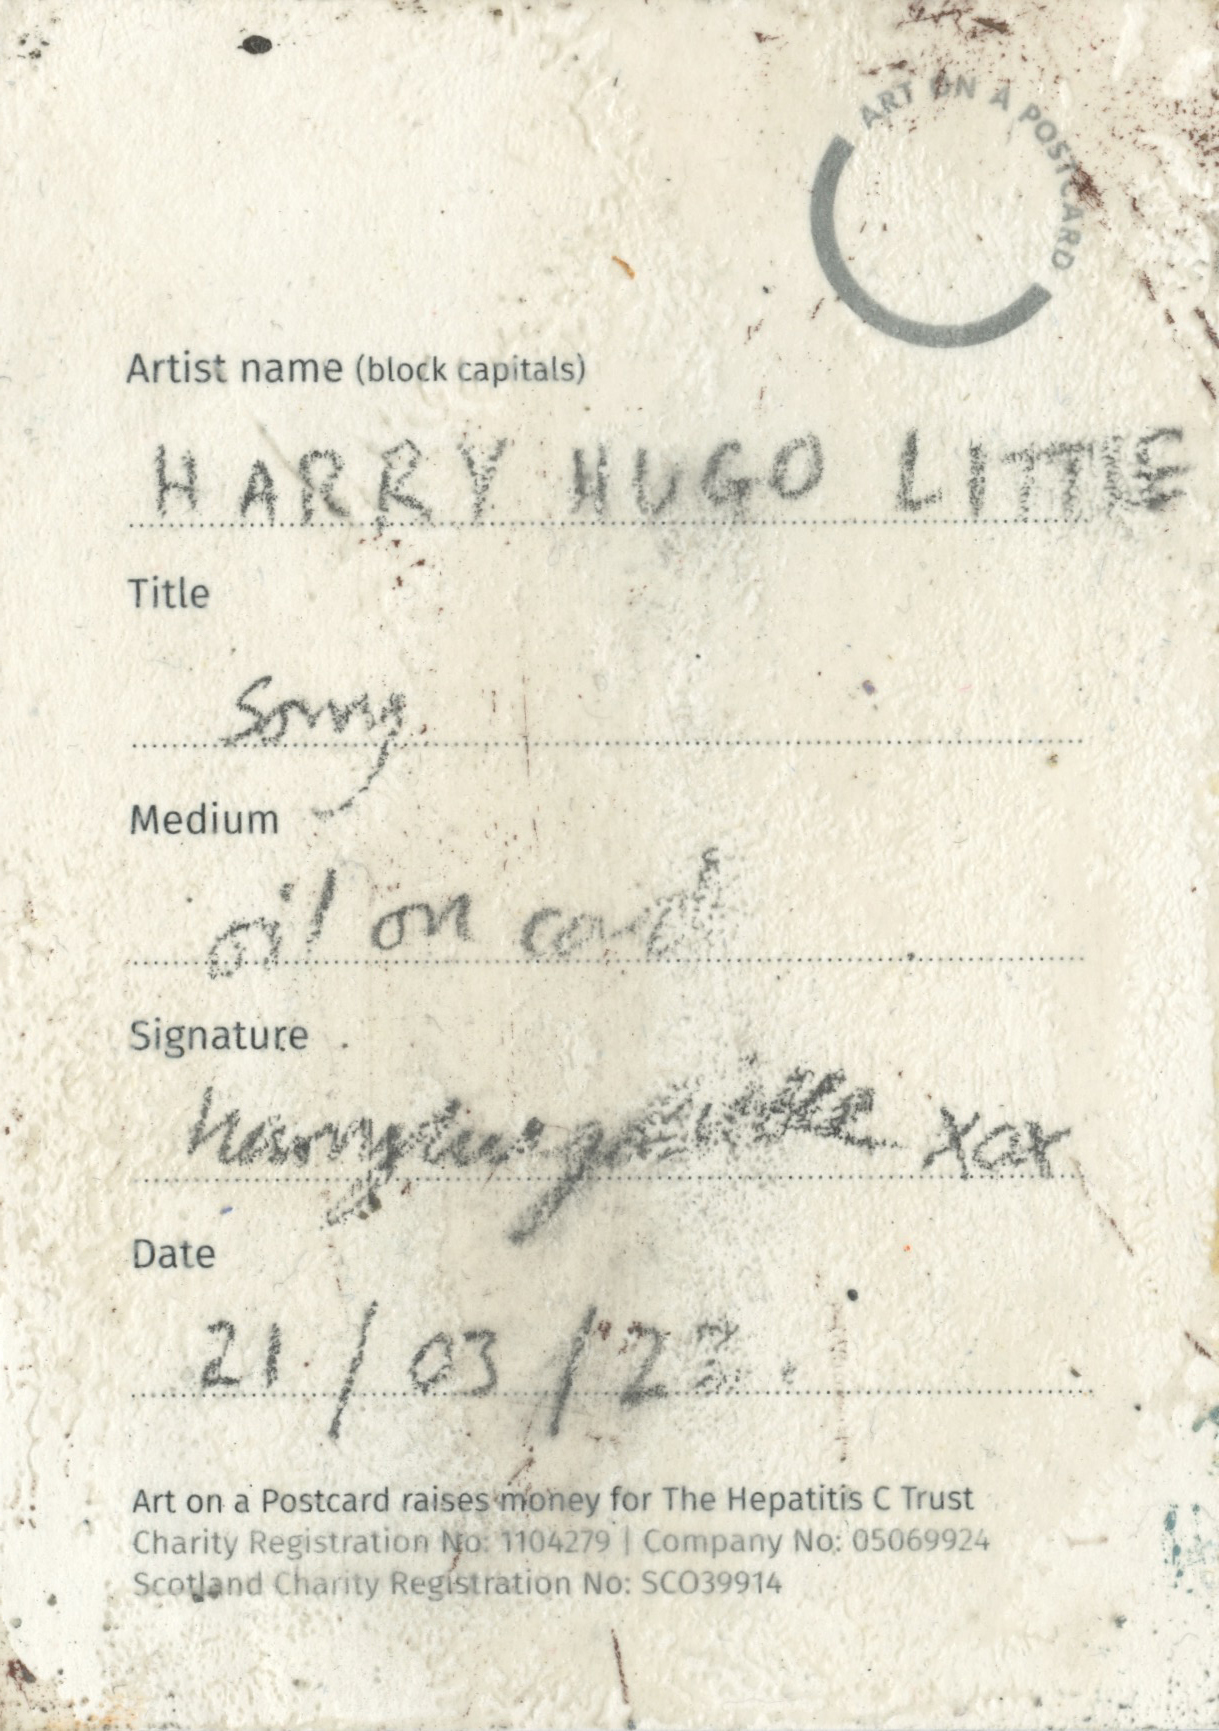 9. Harry Hugo Little - Sorry - BACK